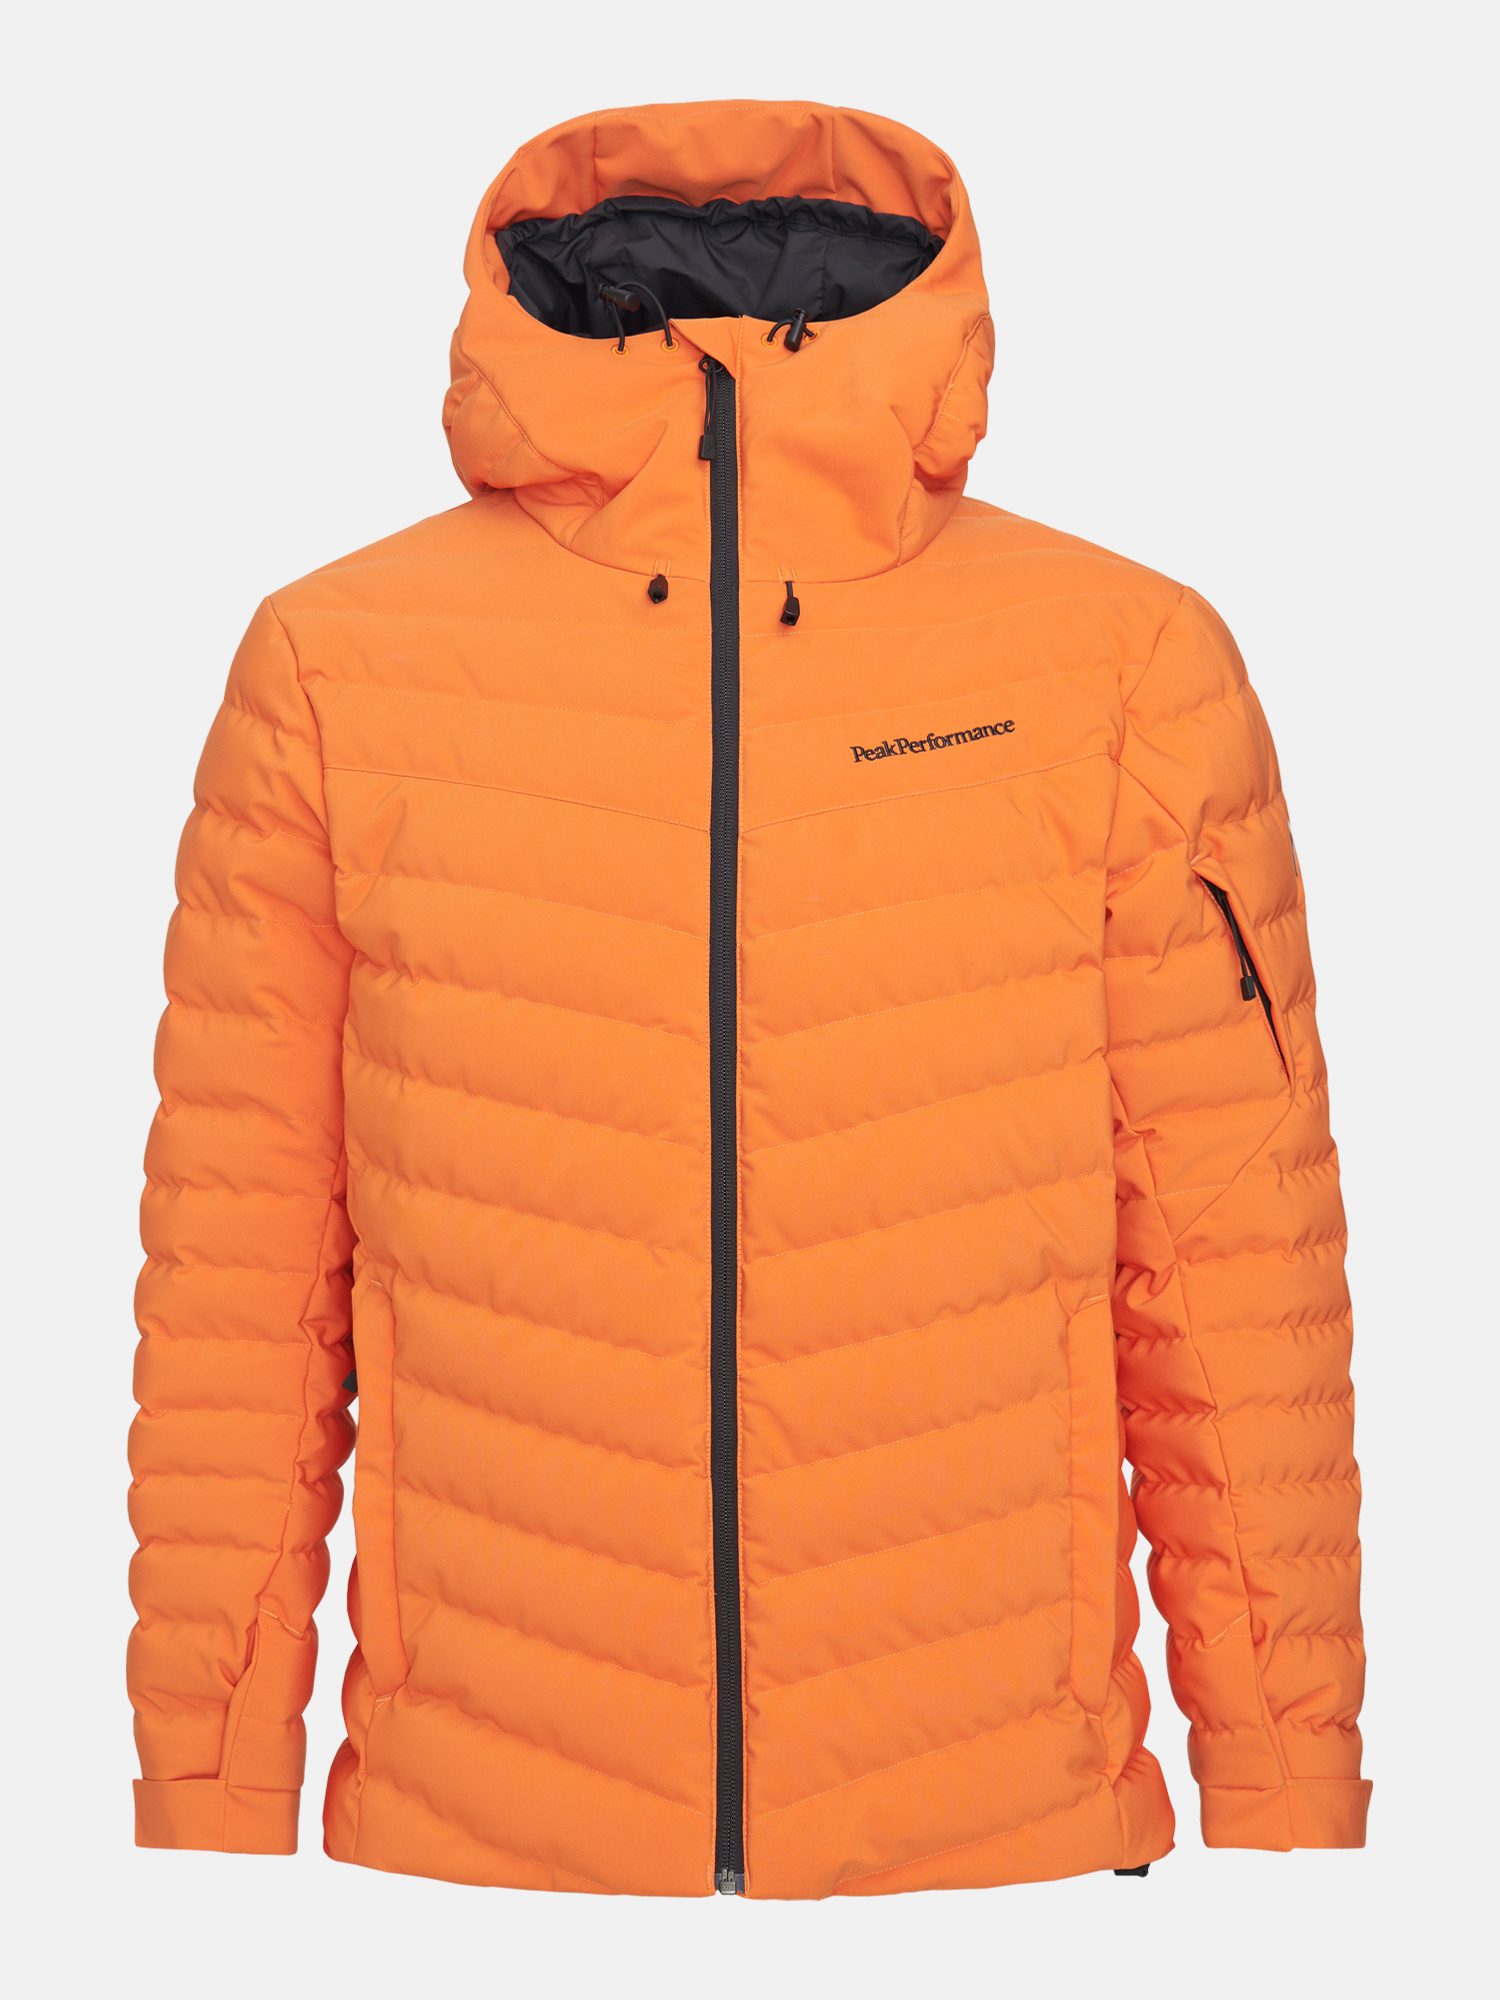 Haast je Uitstekend Omgekeerde Peak Performance Men's Frost Ski Jacket – Orange Altitude - Free Style Sport